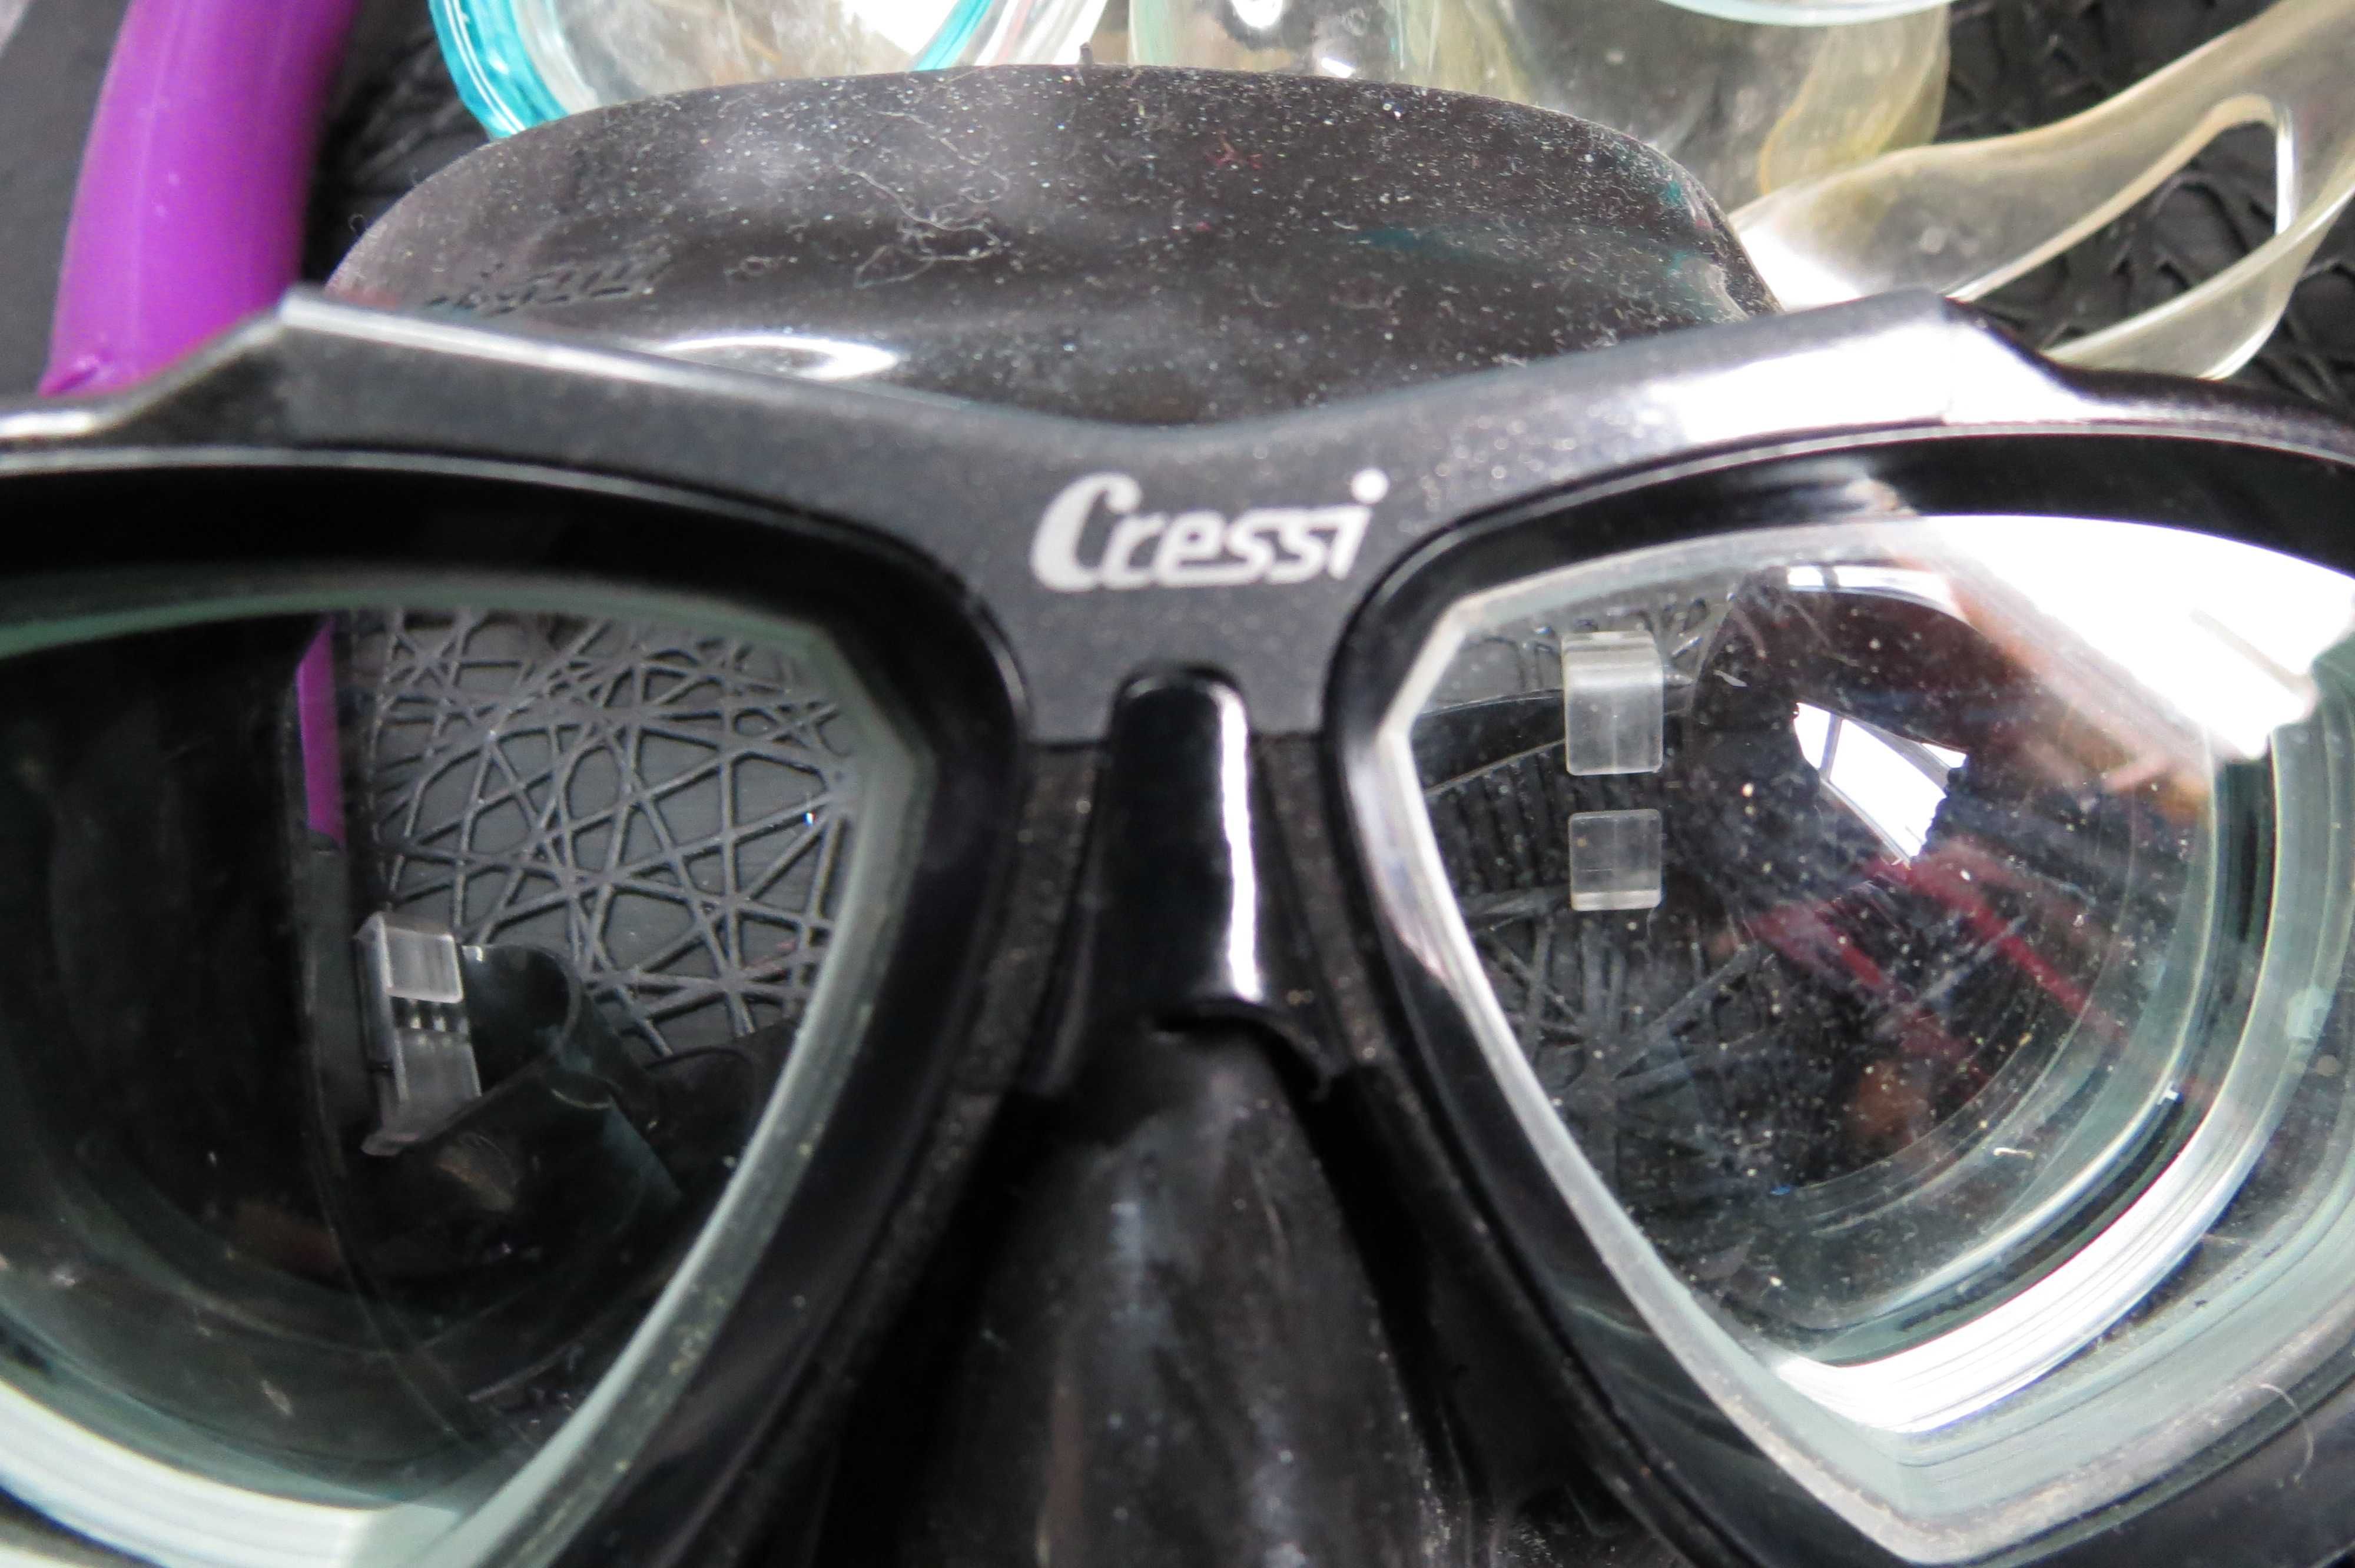 маска для подводного плавания с диоптриями cressi